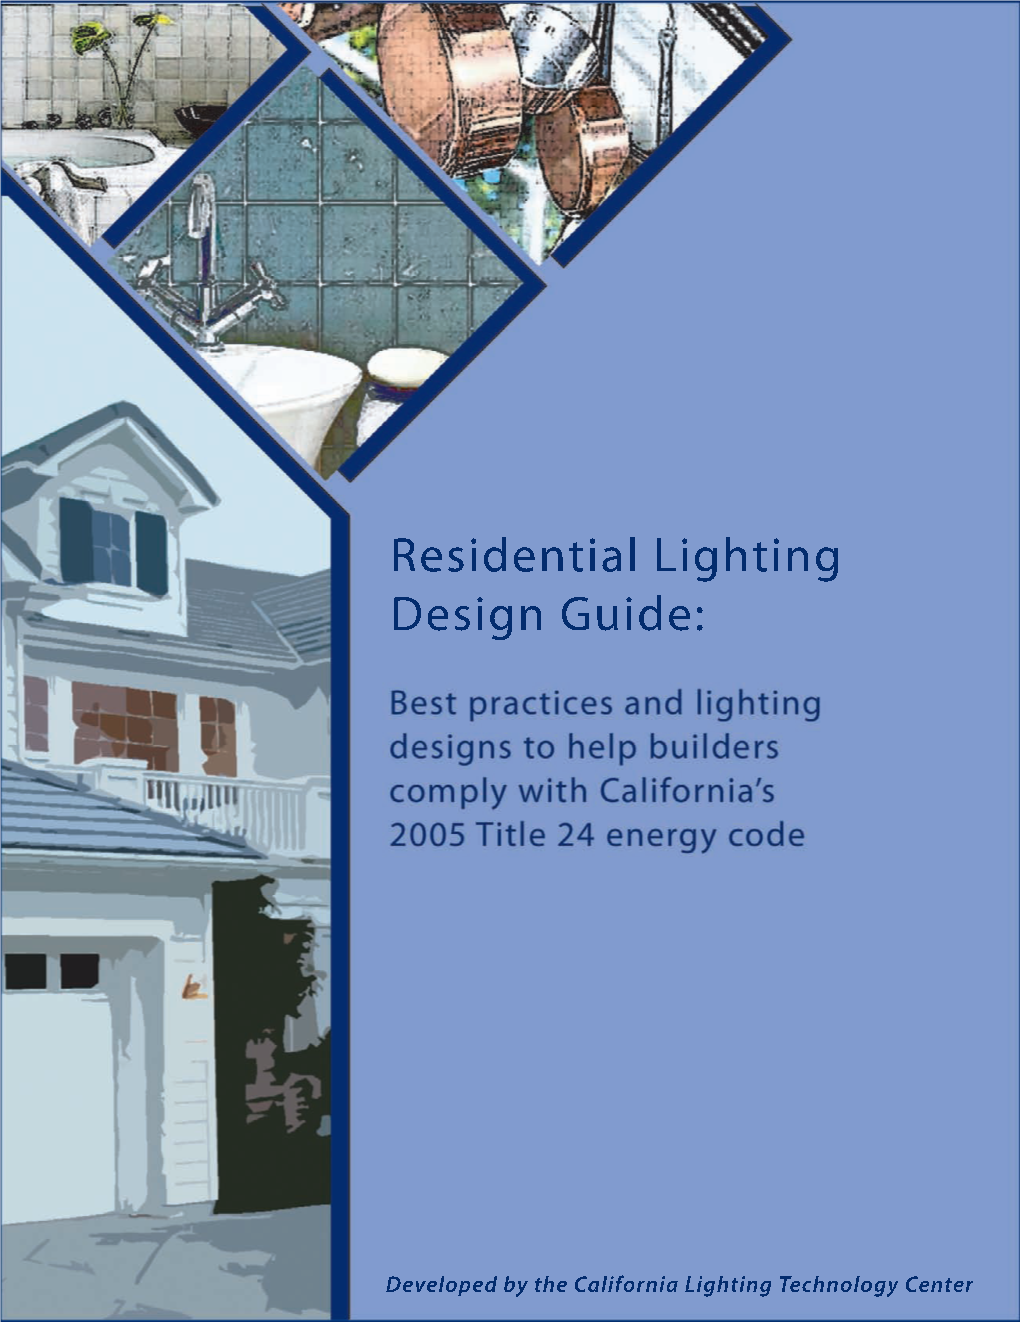 New Residential Lighting Standards in 2005